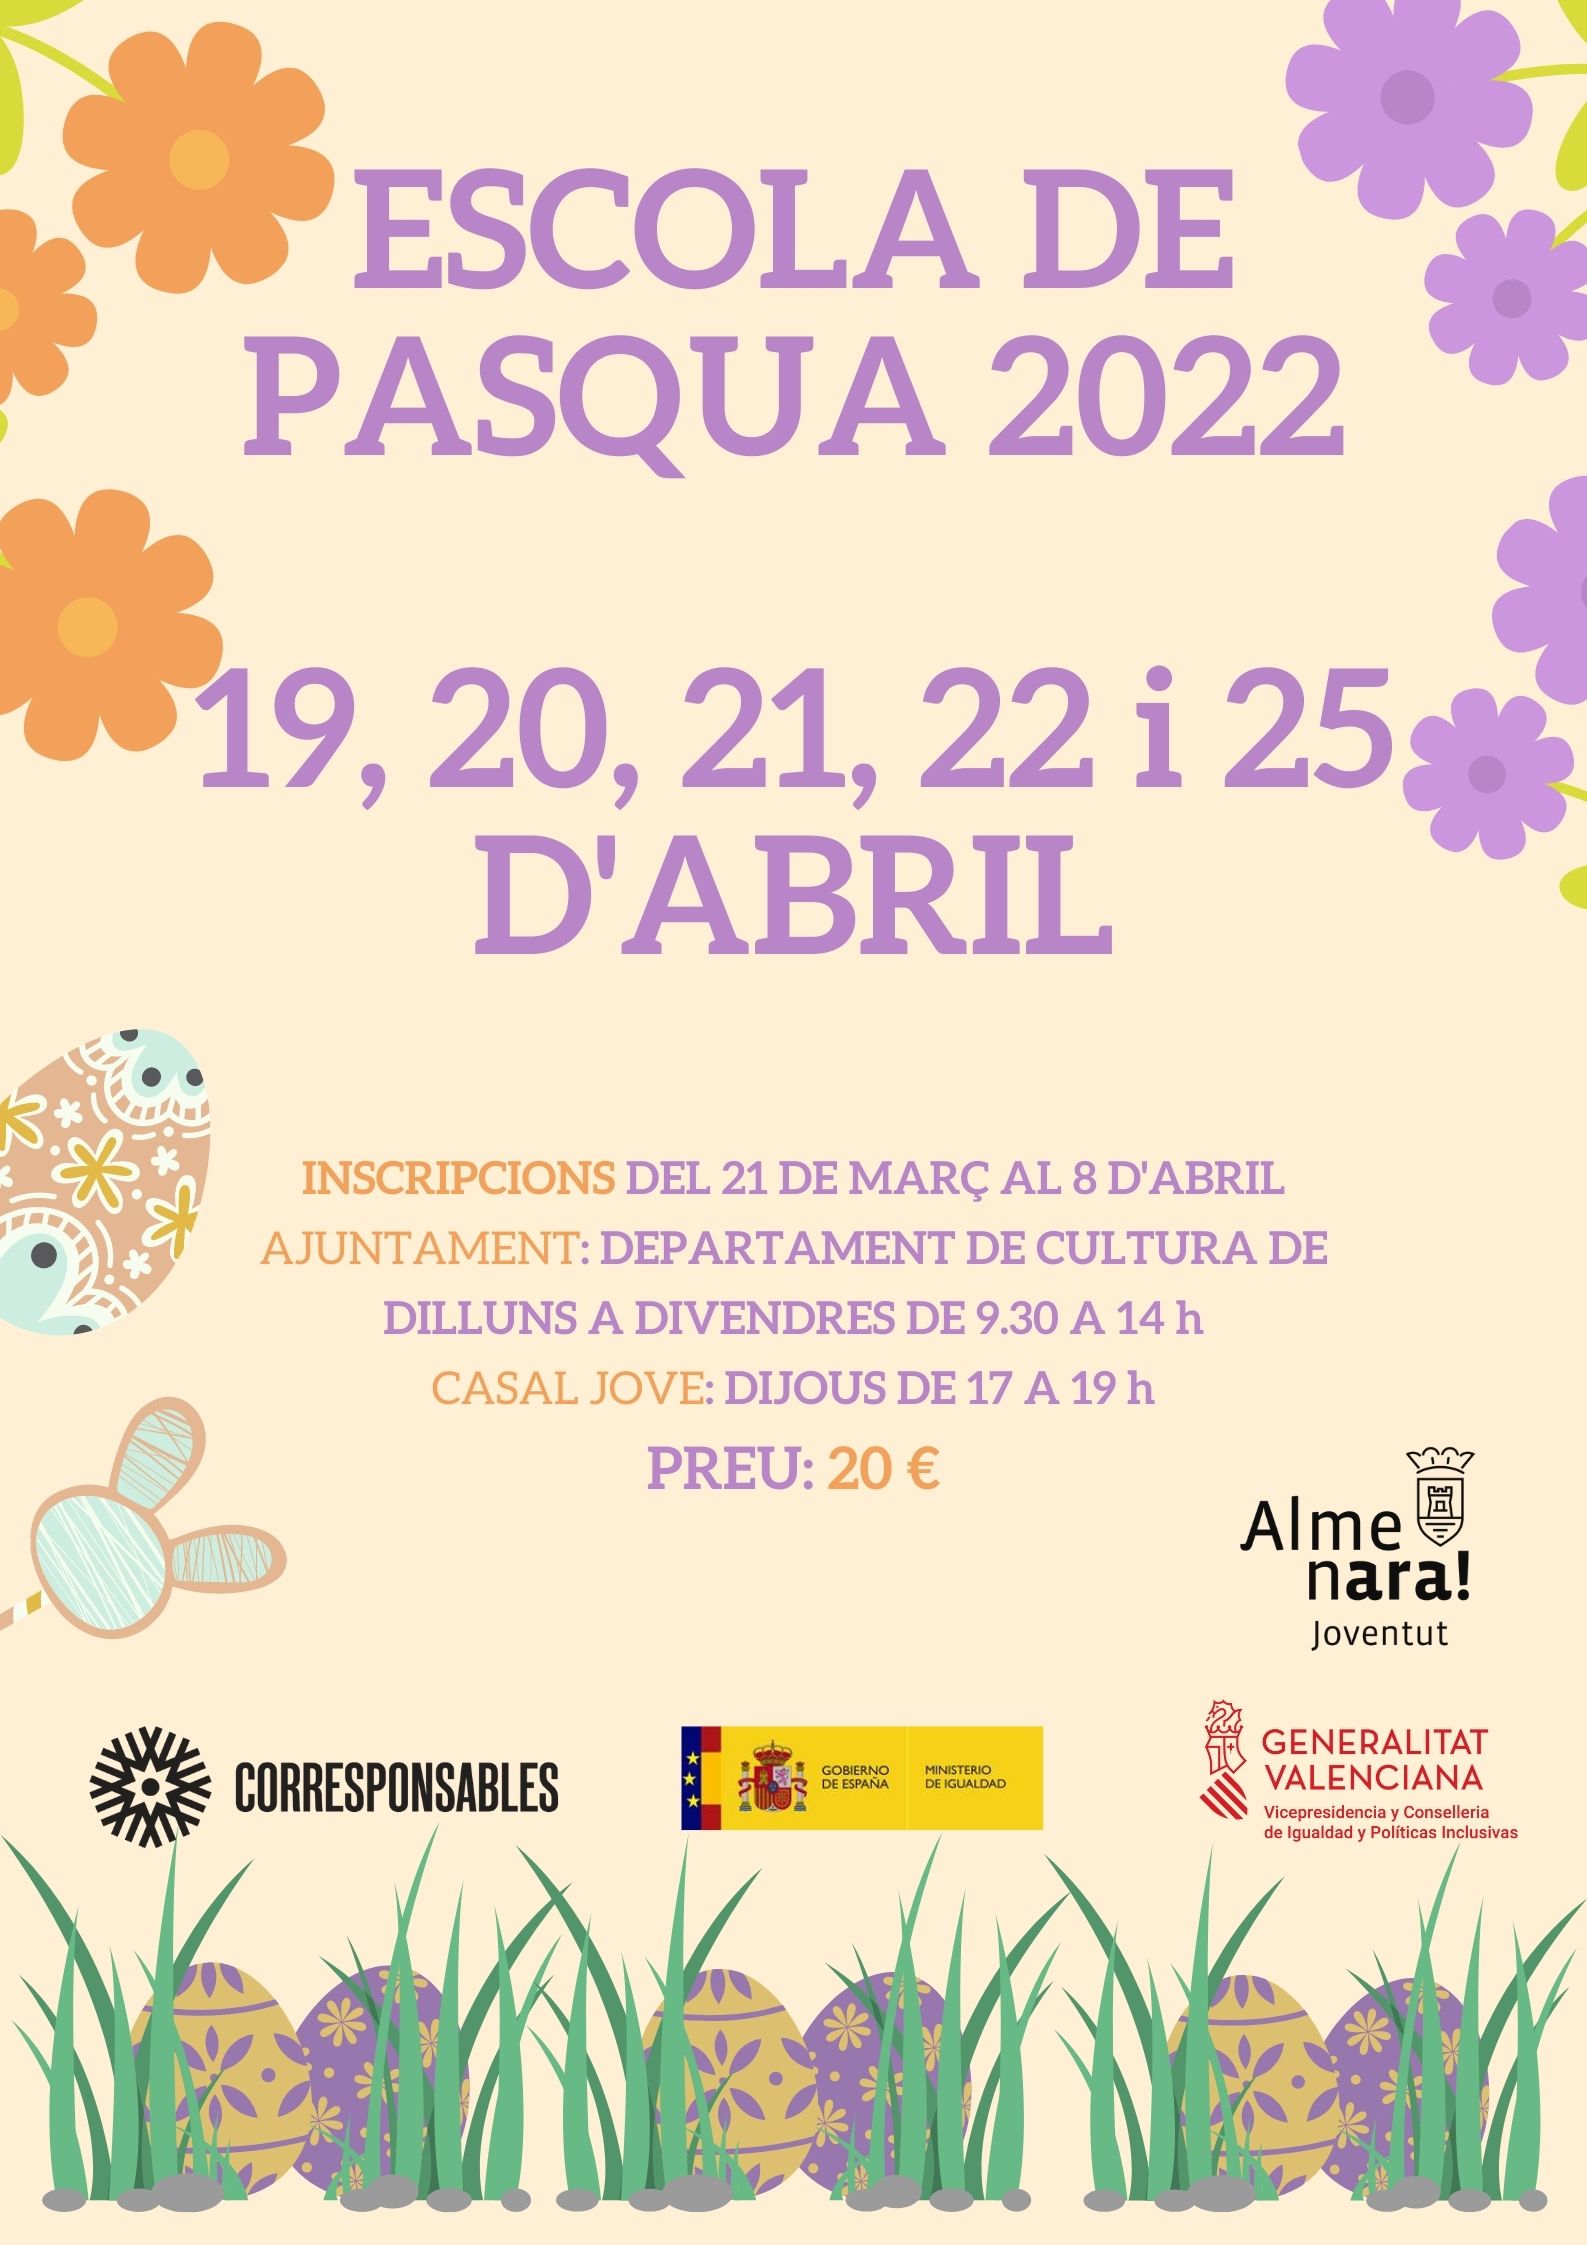 L’Escola de Pasqua de Almenara se celebrará entre el 19 y el 25 de abril